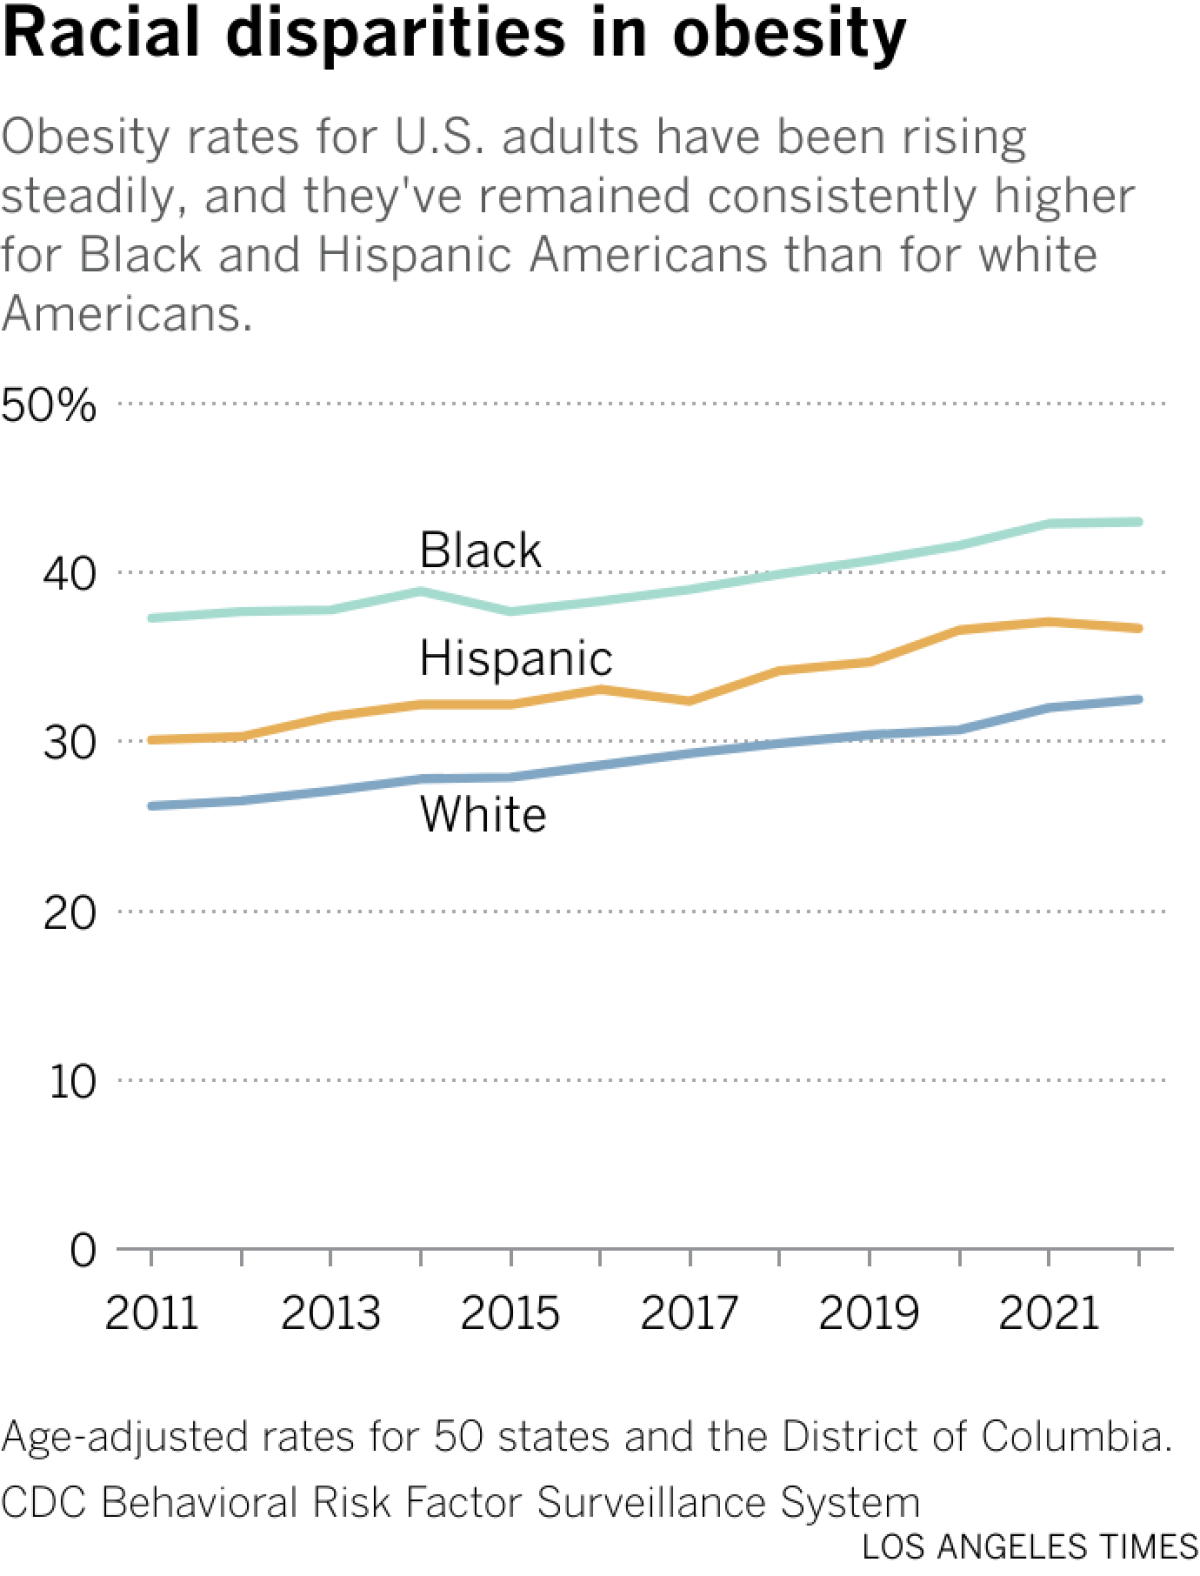 米国成人の肥満率は着実に上昇しており、黒人およびヒスパニック系米国人の肥満率は白人米国人よりも一貫して高いままである。